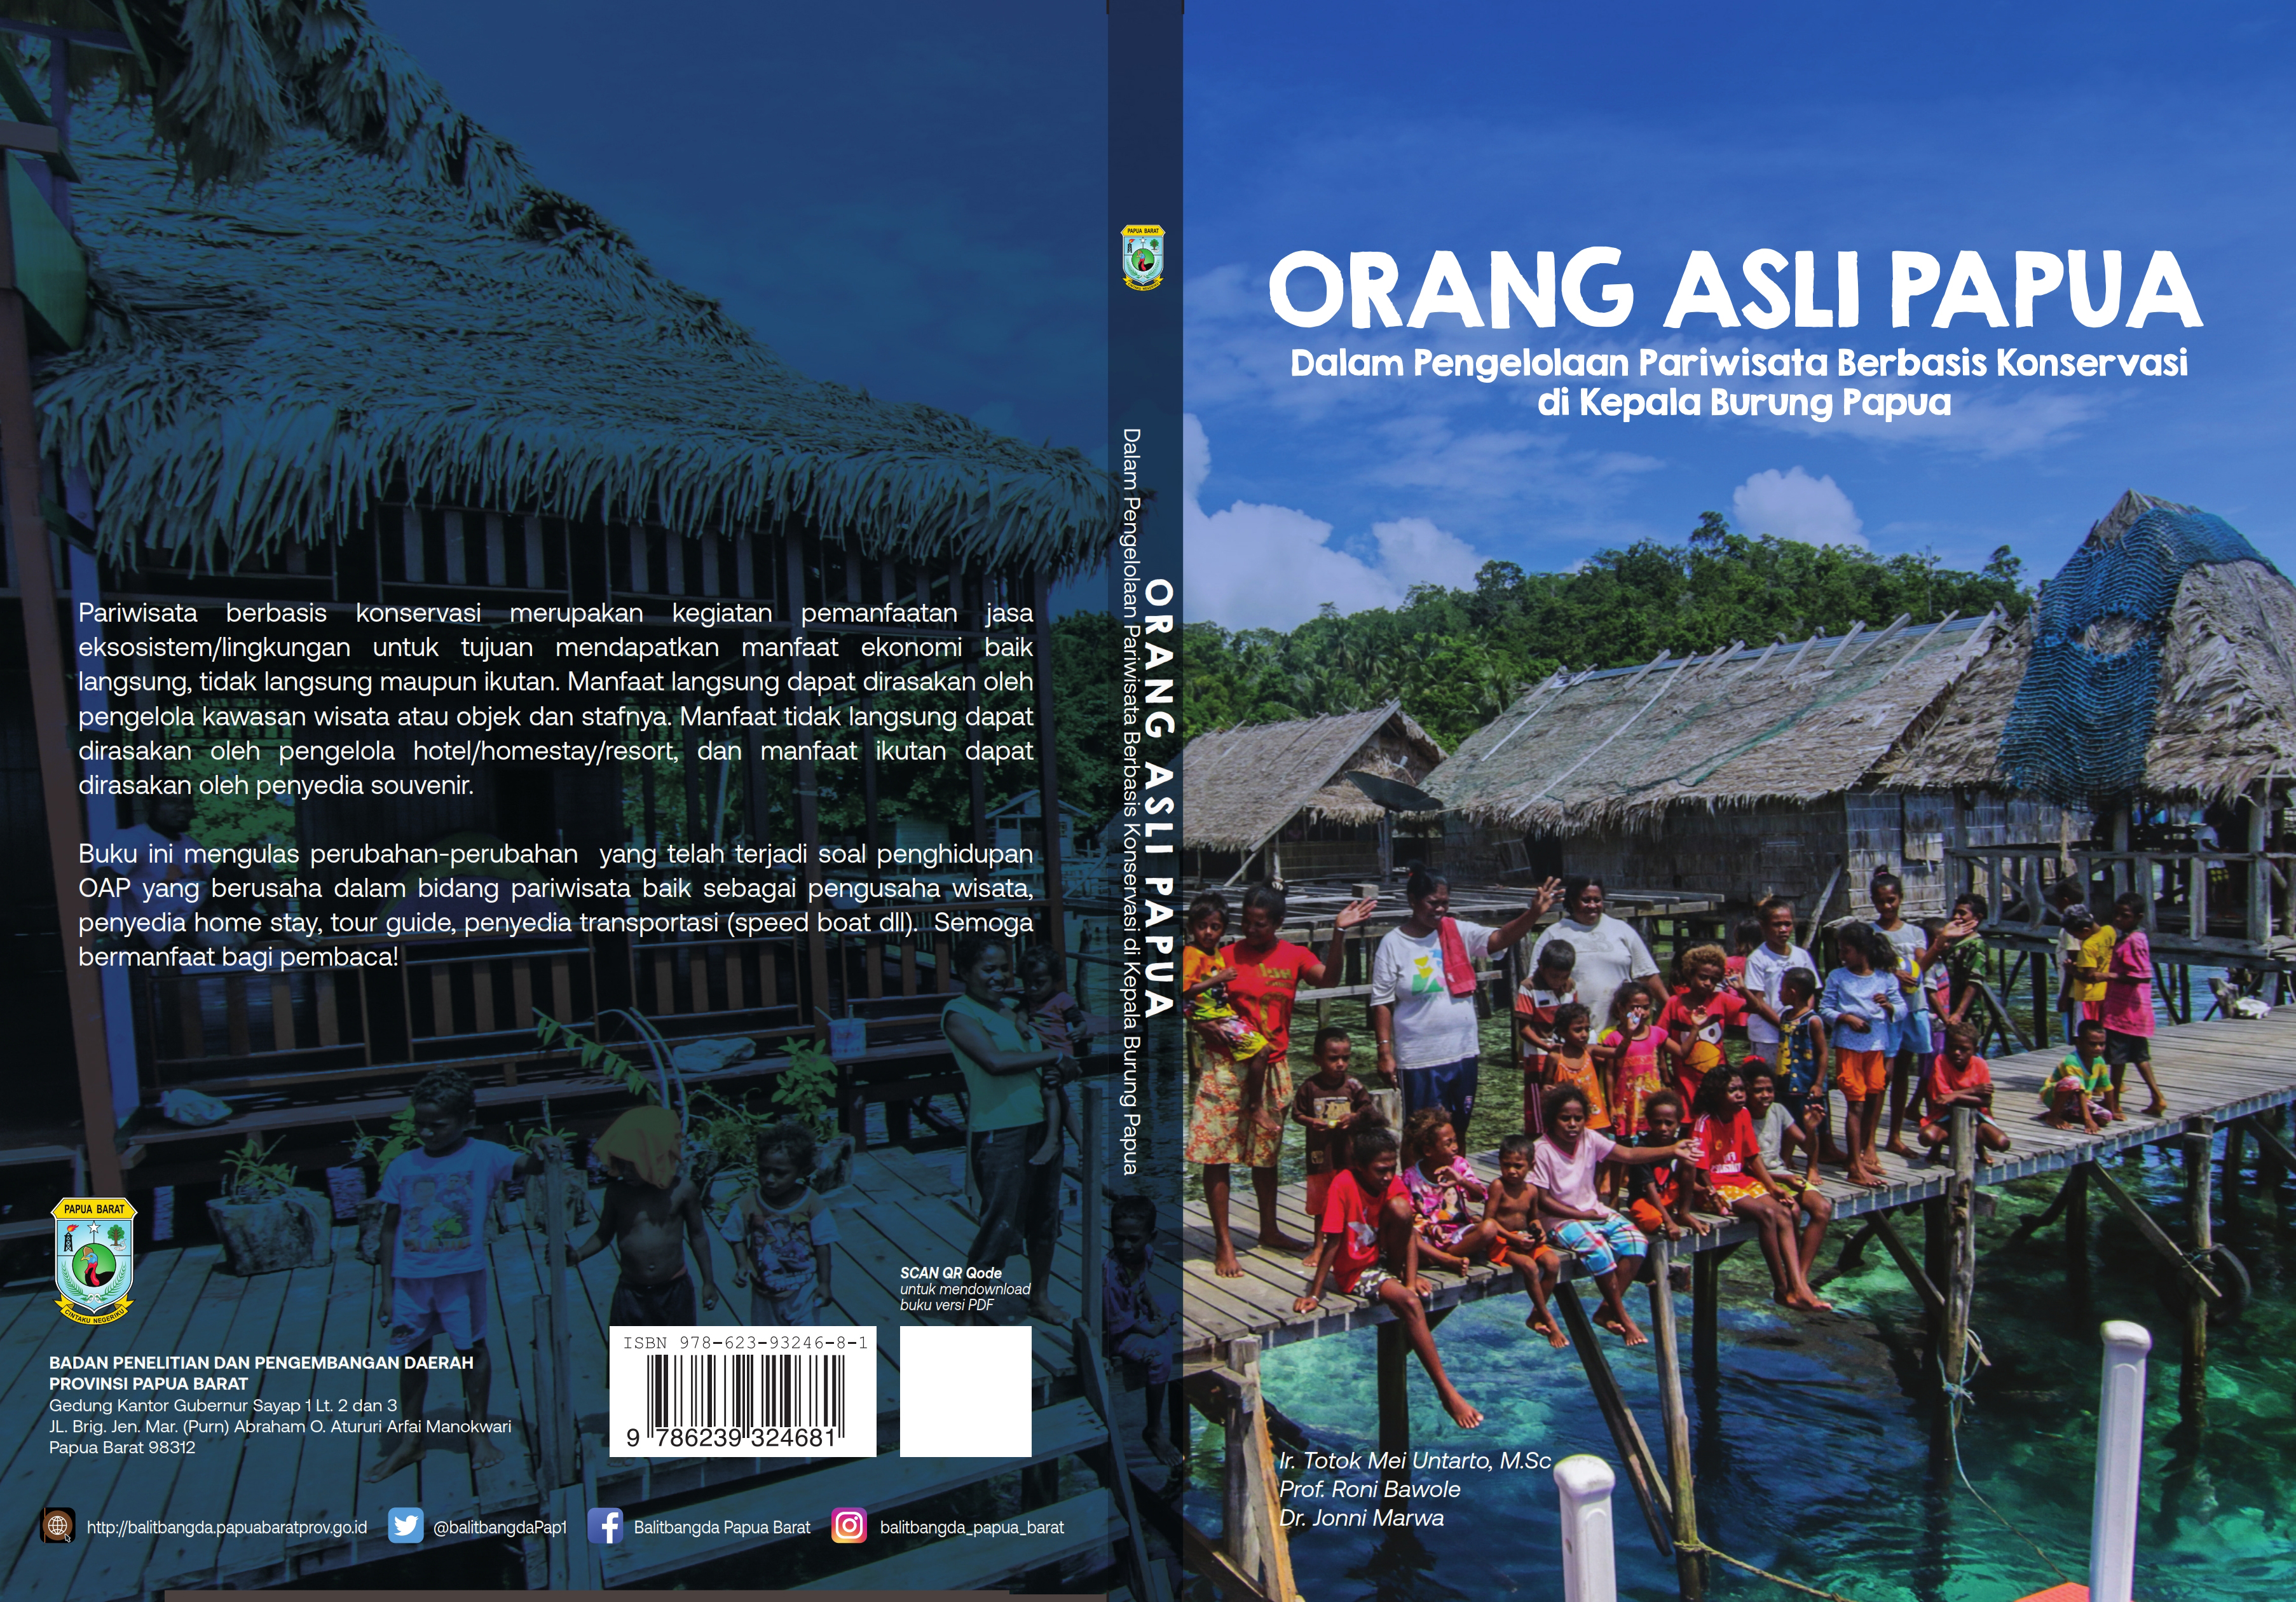 Orang Asli Papua (Dalam Pengelolaan Pariwisata Berbasis Konservasi di Kepala Burung Papua)